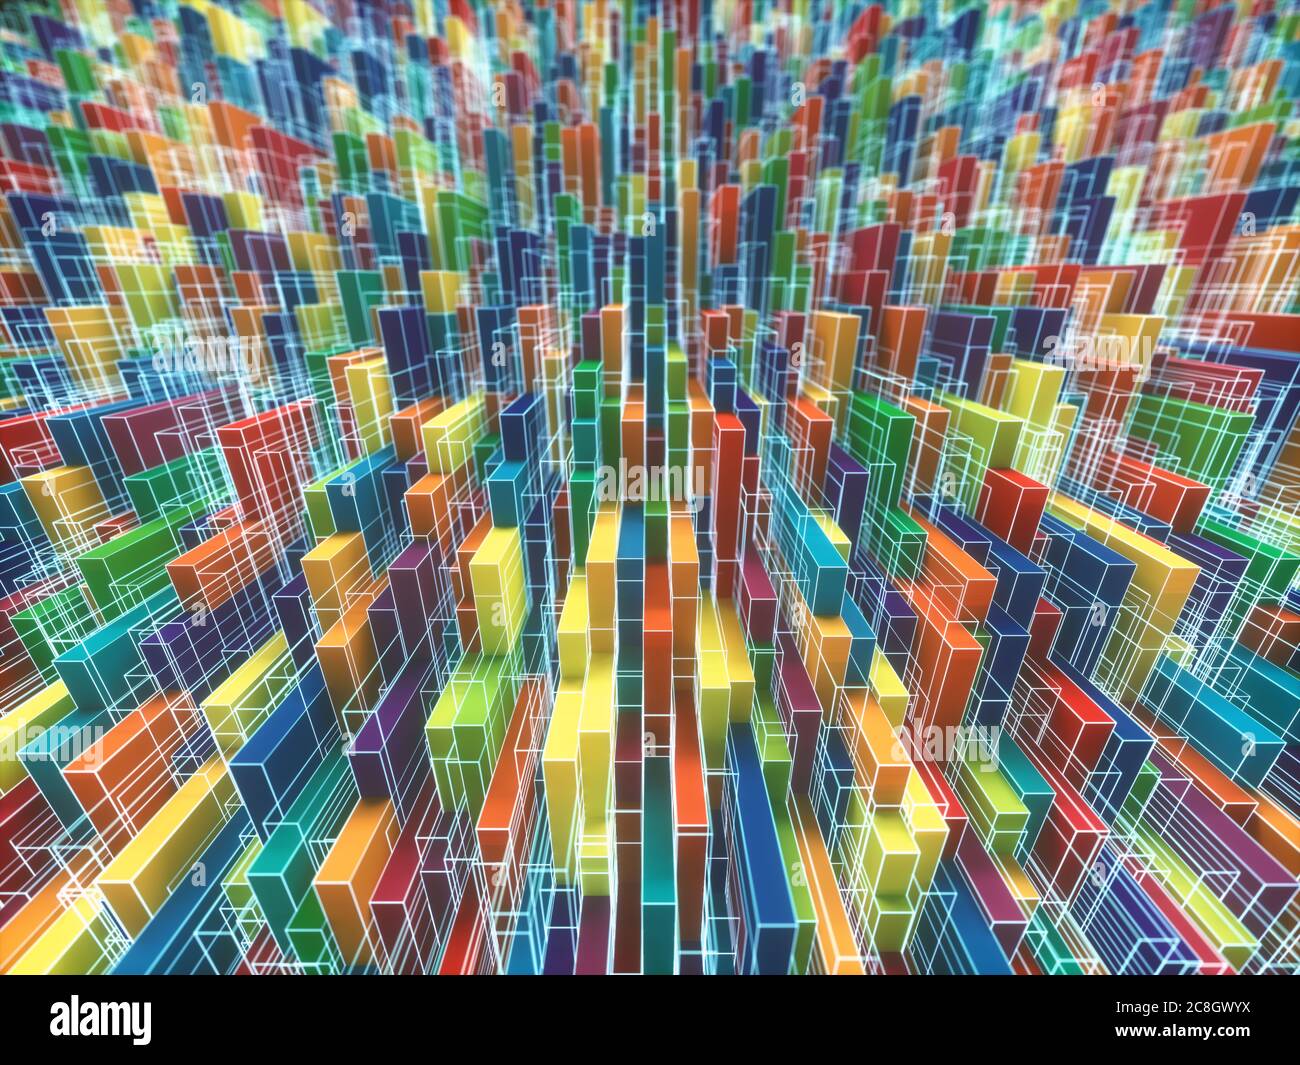 Image d'arrière-plan abstraite et colorée. Formes géométriques et lignes dispersées de façon aléatoire dans le concept de complexité. Illustration 3D. Banque D'Images